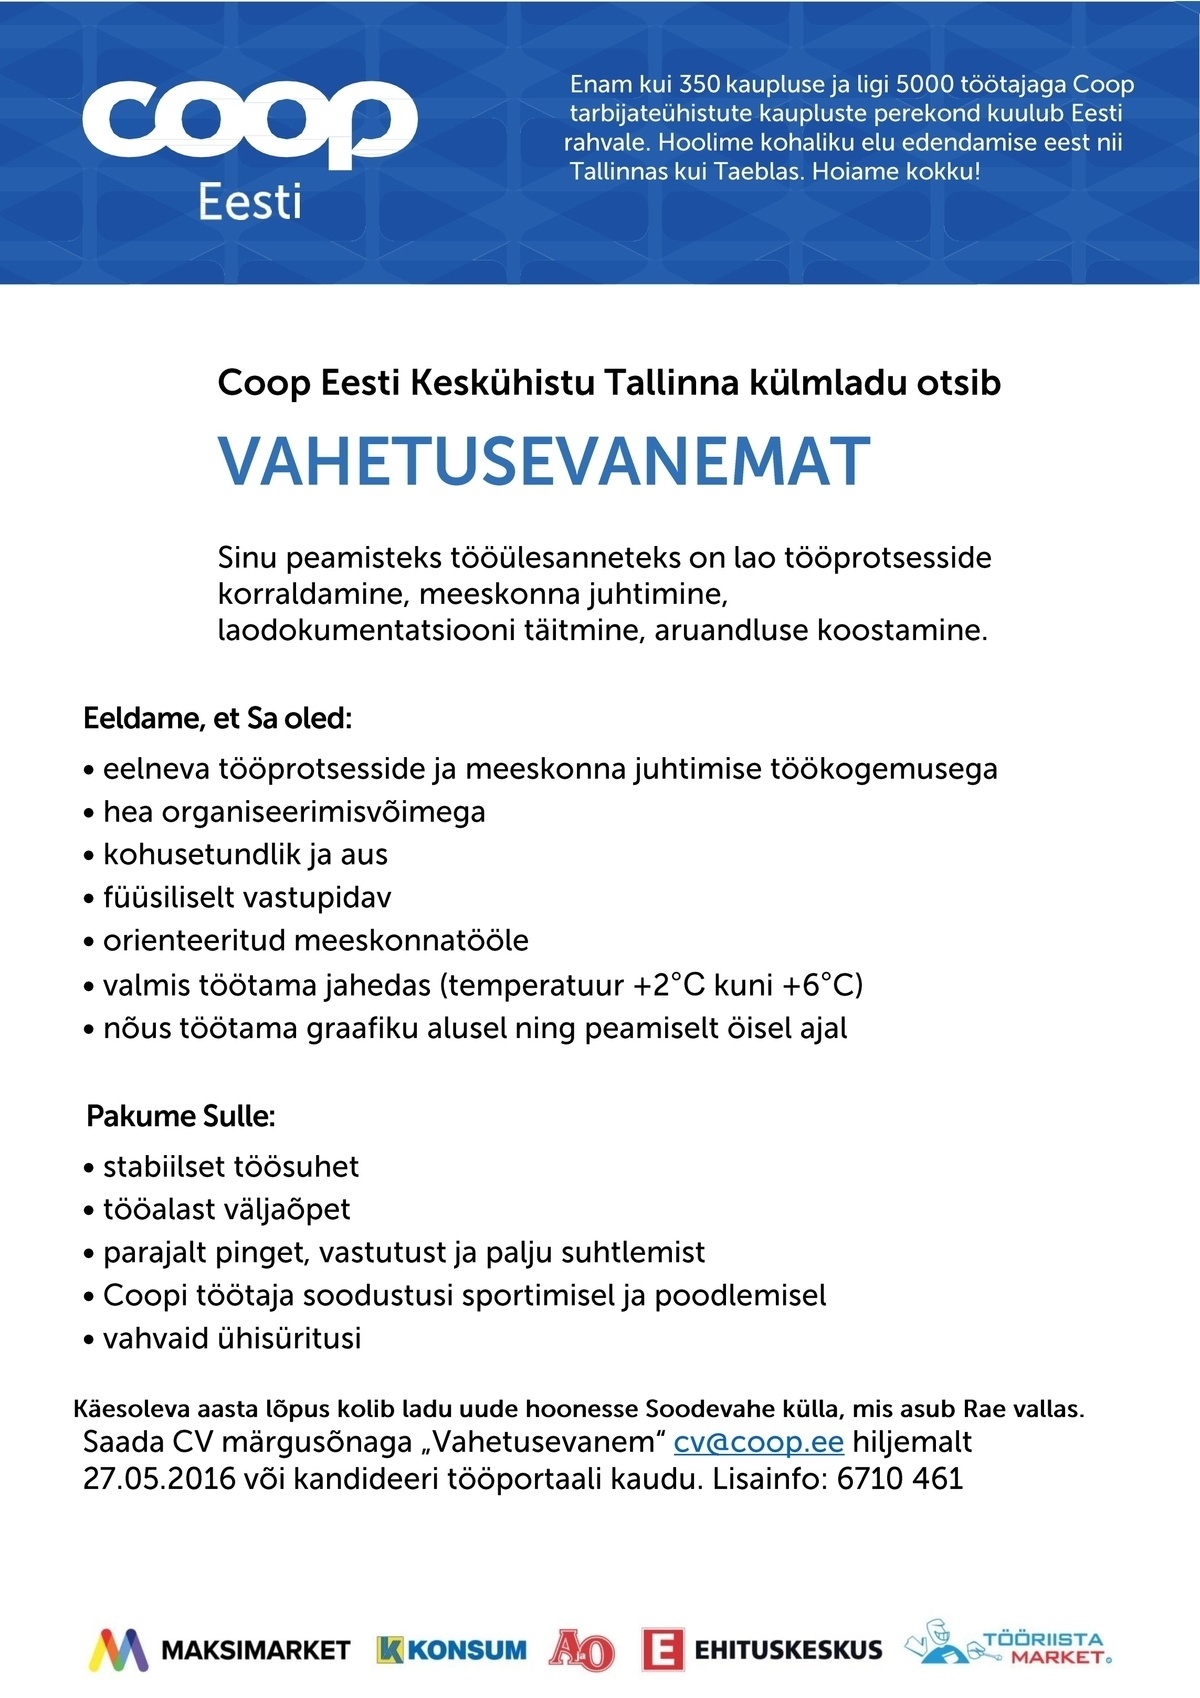 Coop Eesti Keskühistu Vahetusevanem